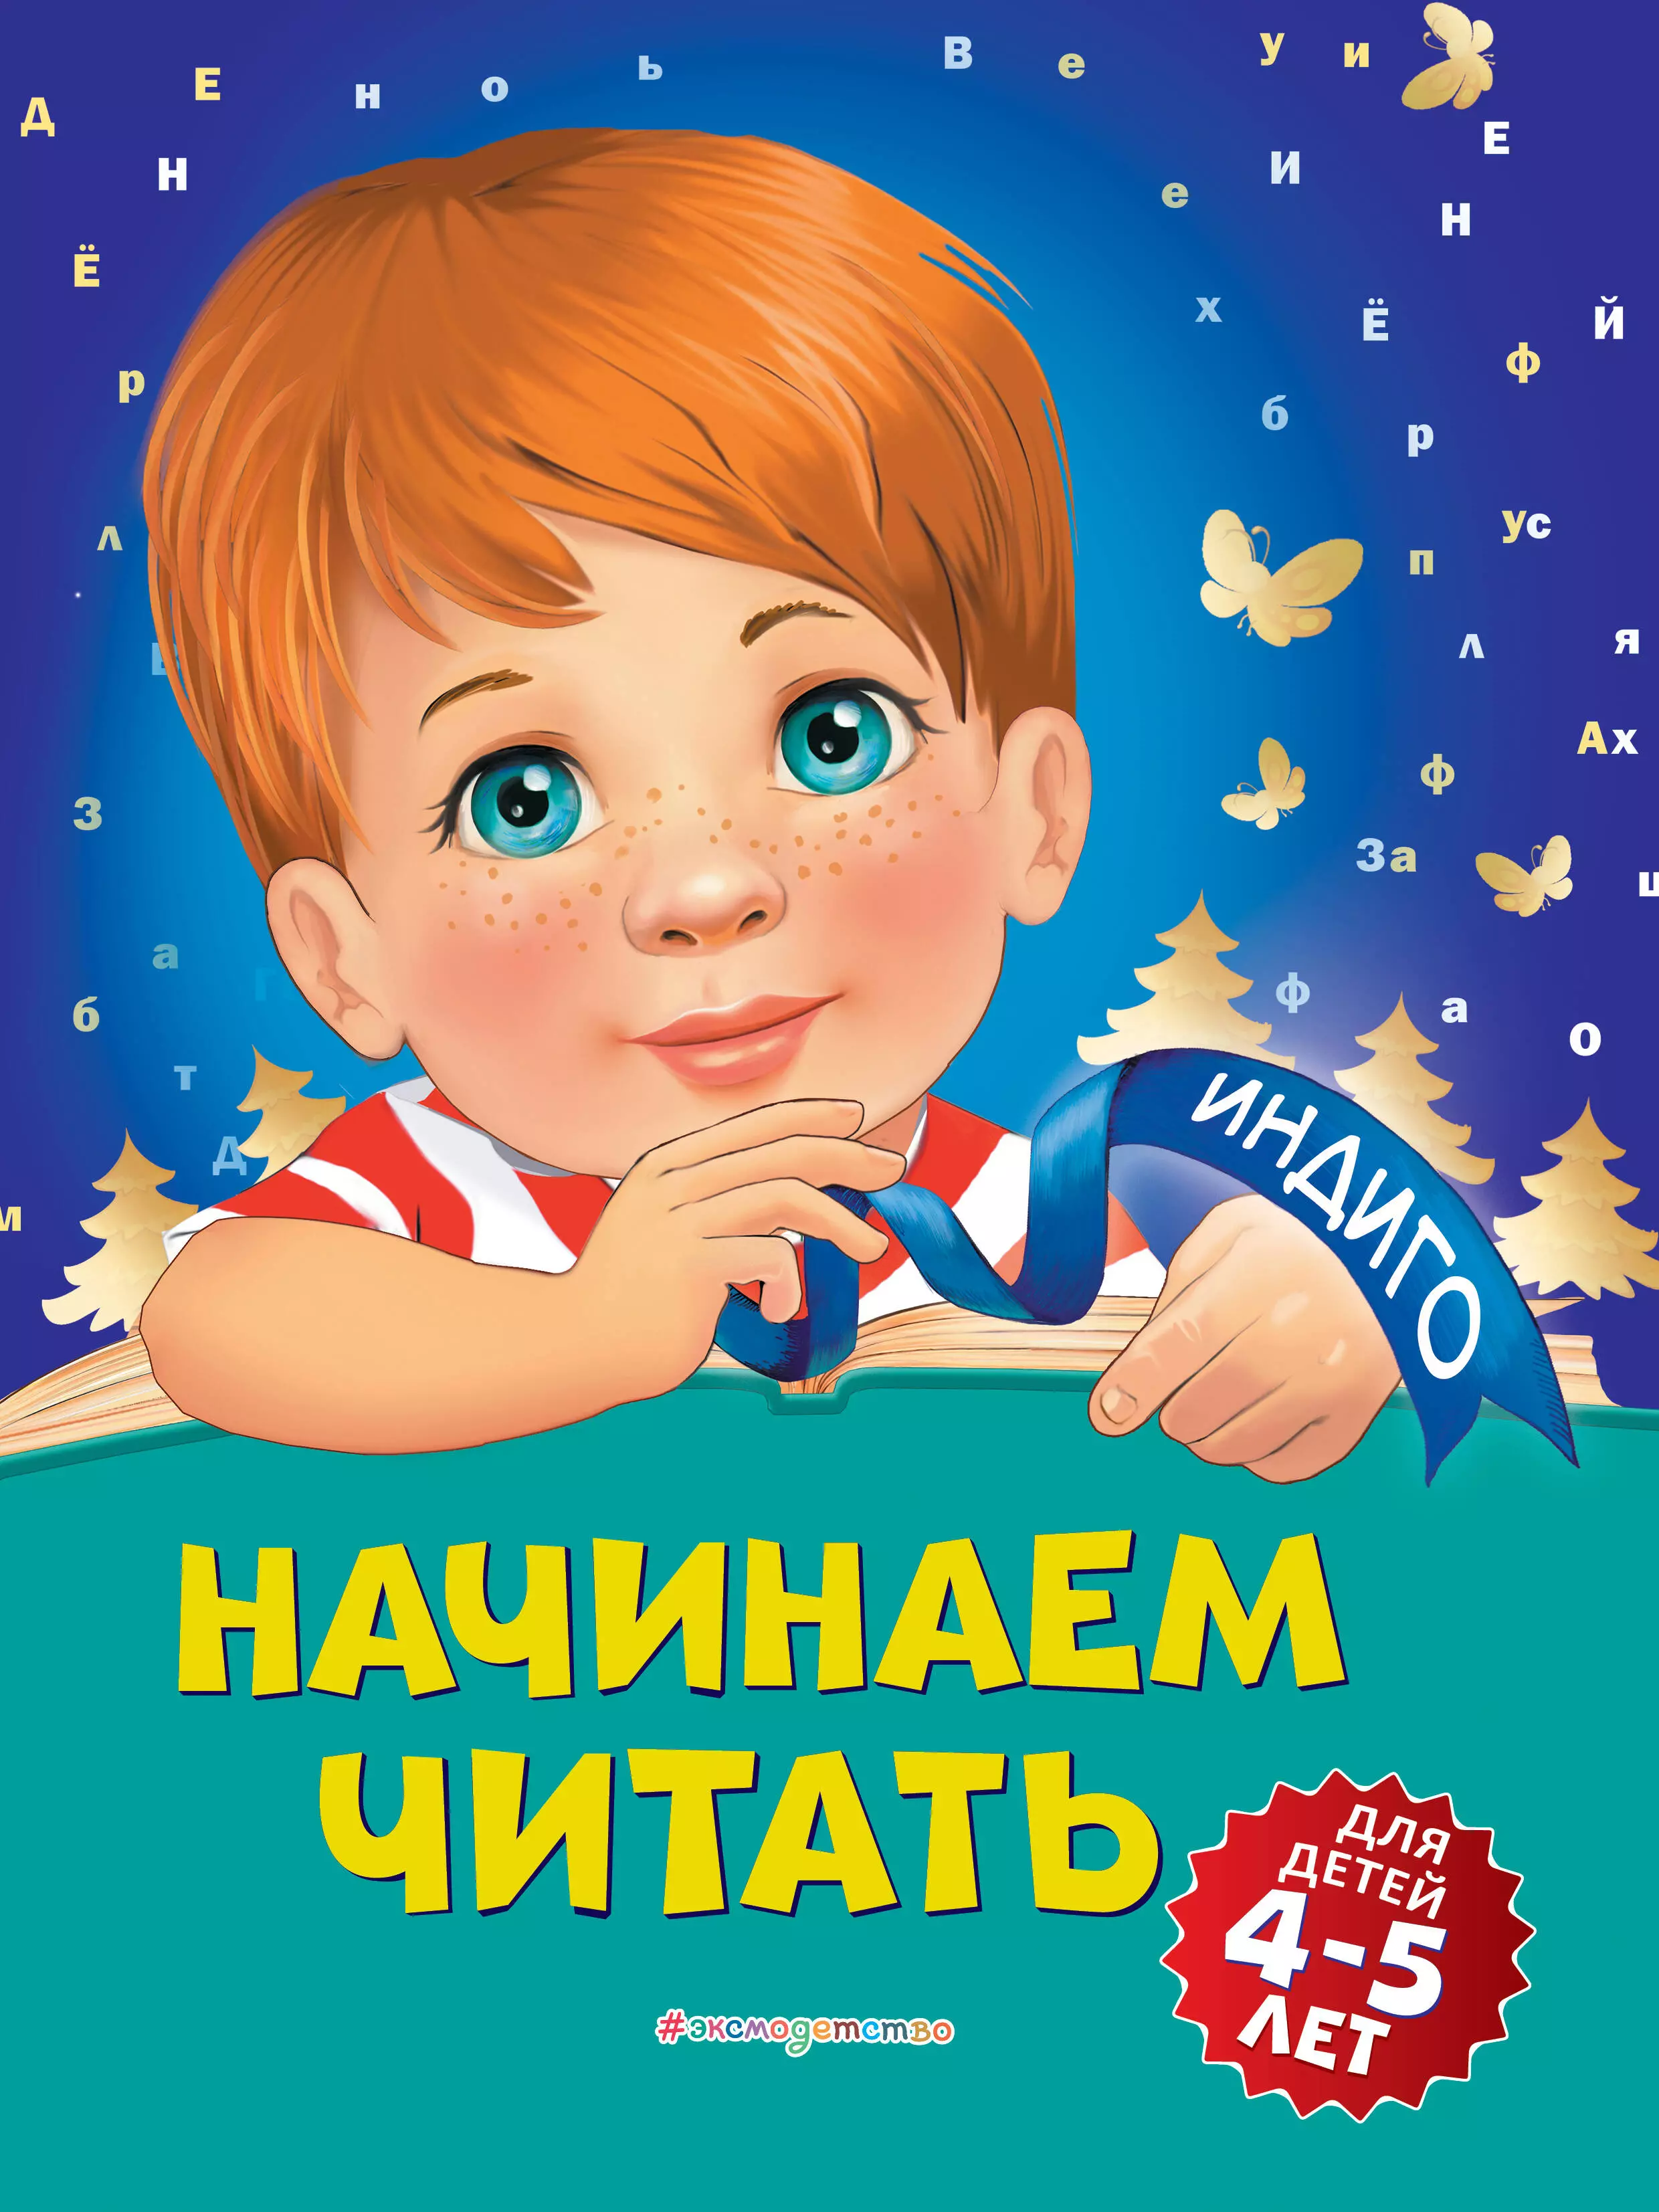 Пономарева Алла Владимировна - Начинаем читать: для детей 4-5 лет